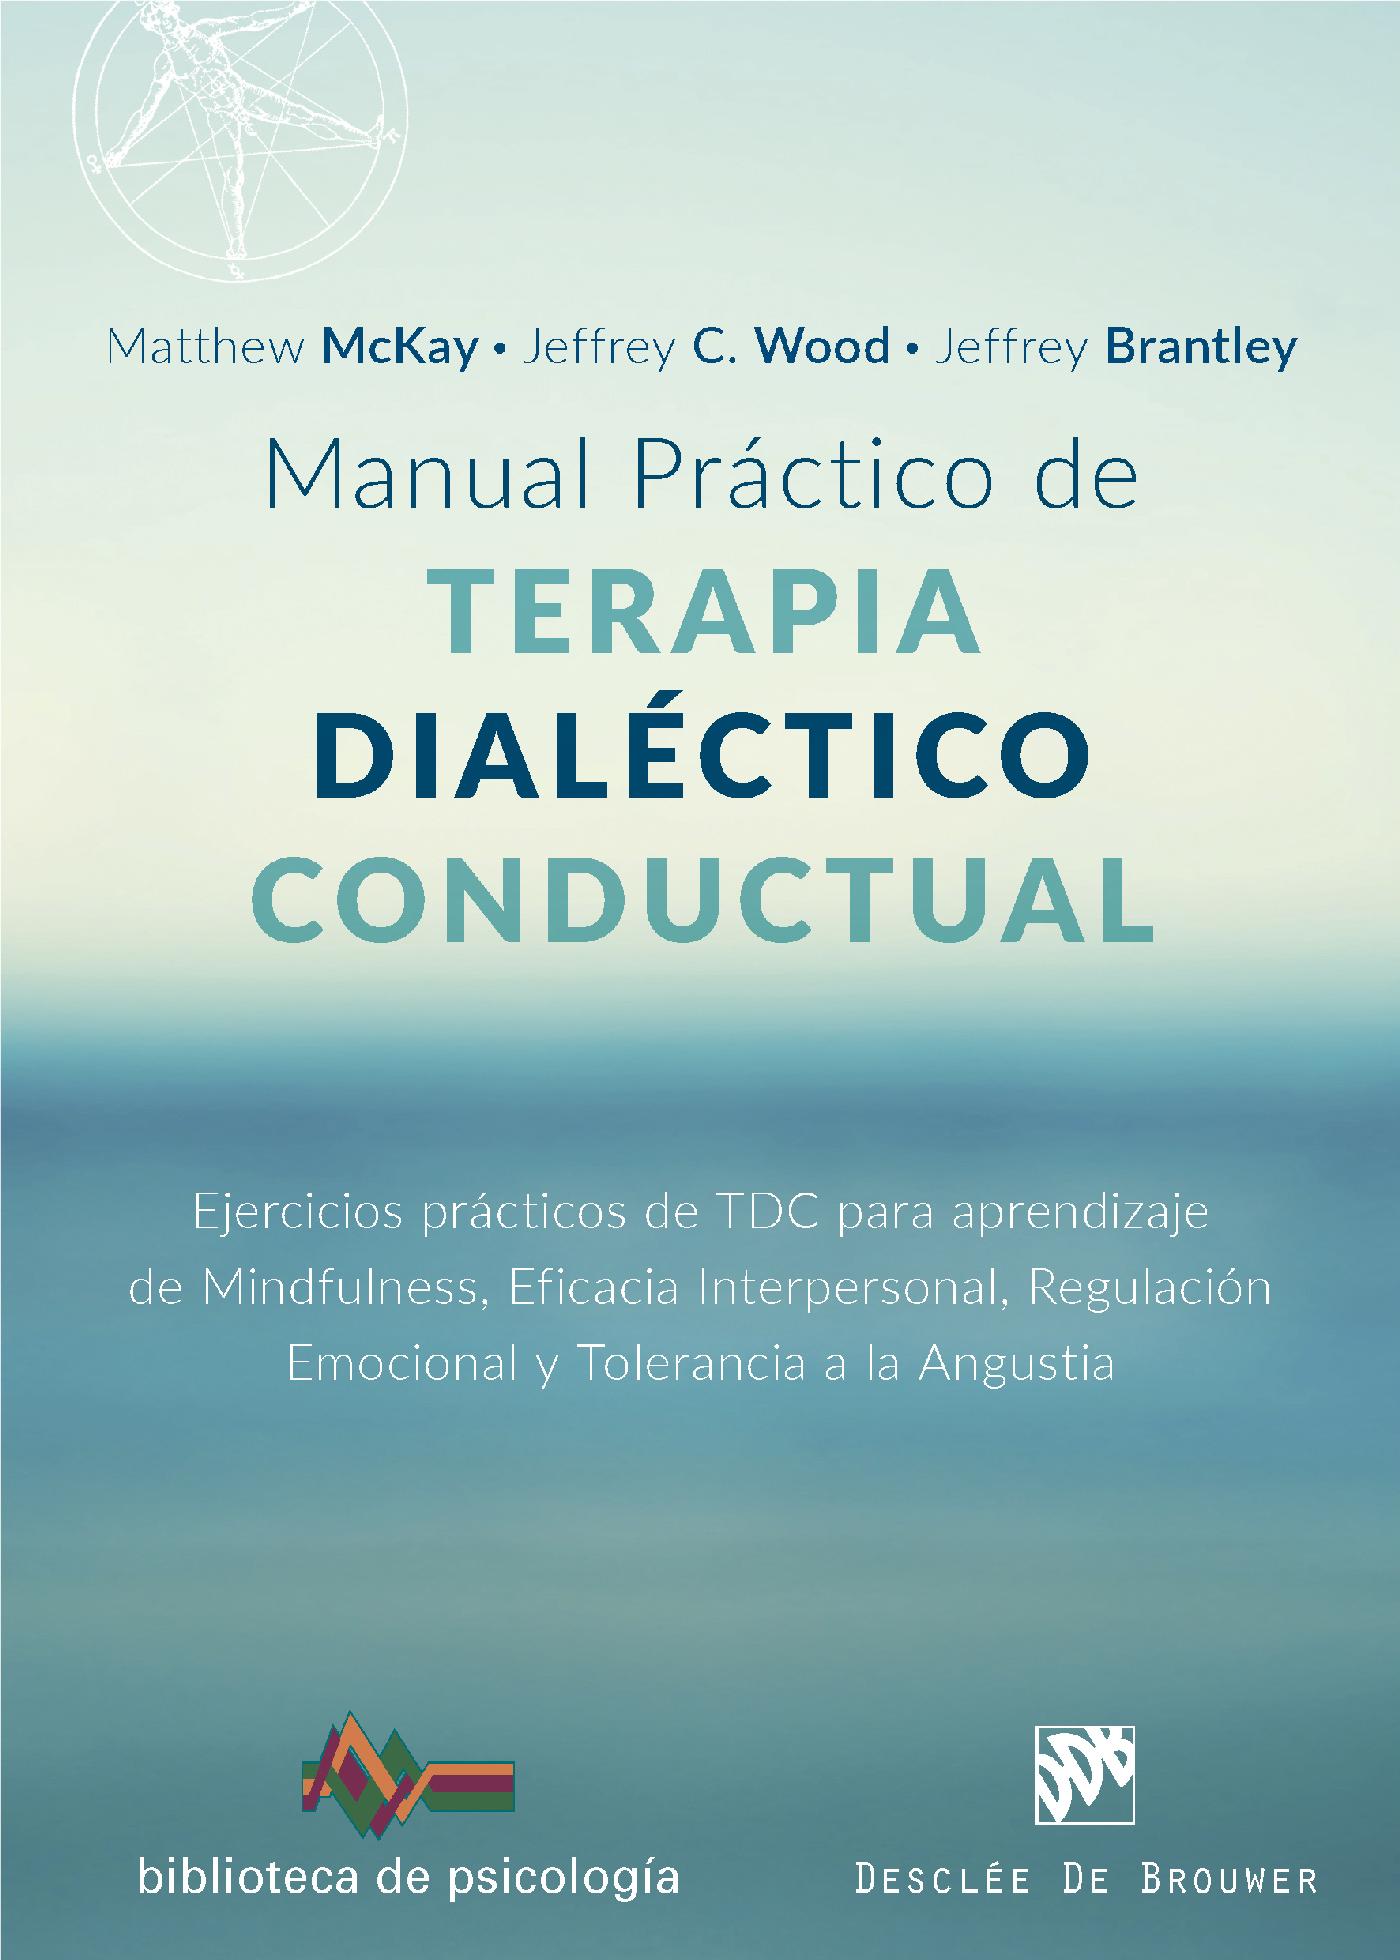 Manual práctico de Terapia Dialéctico Conductual :: Desclée